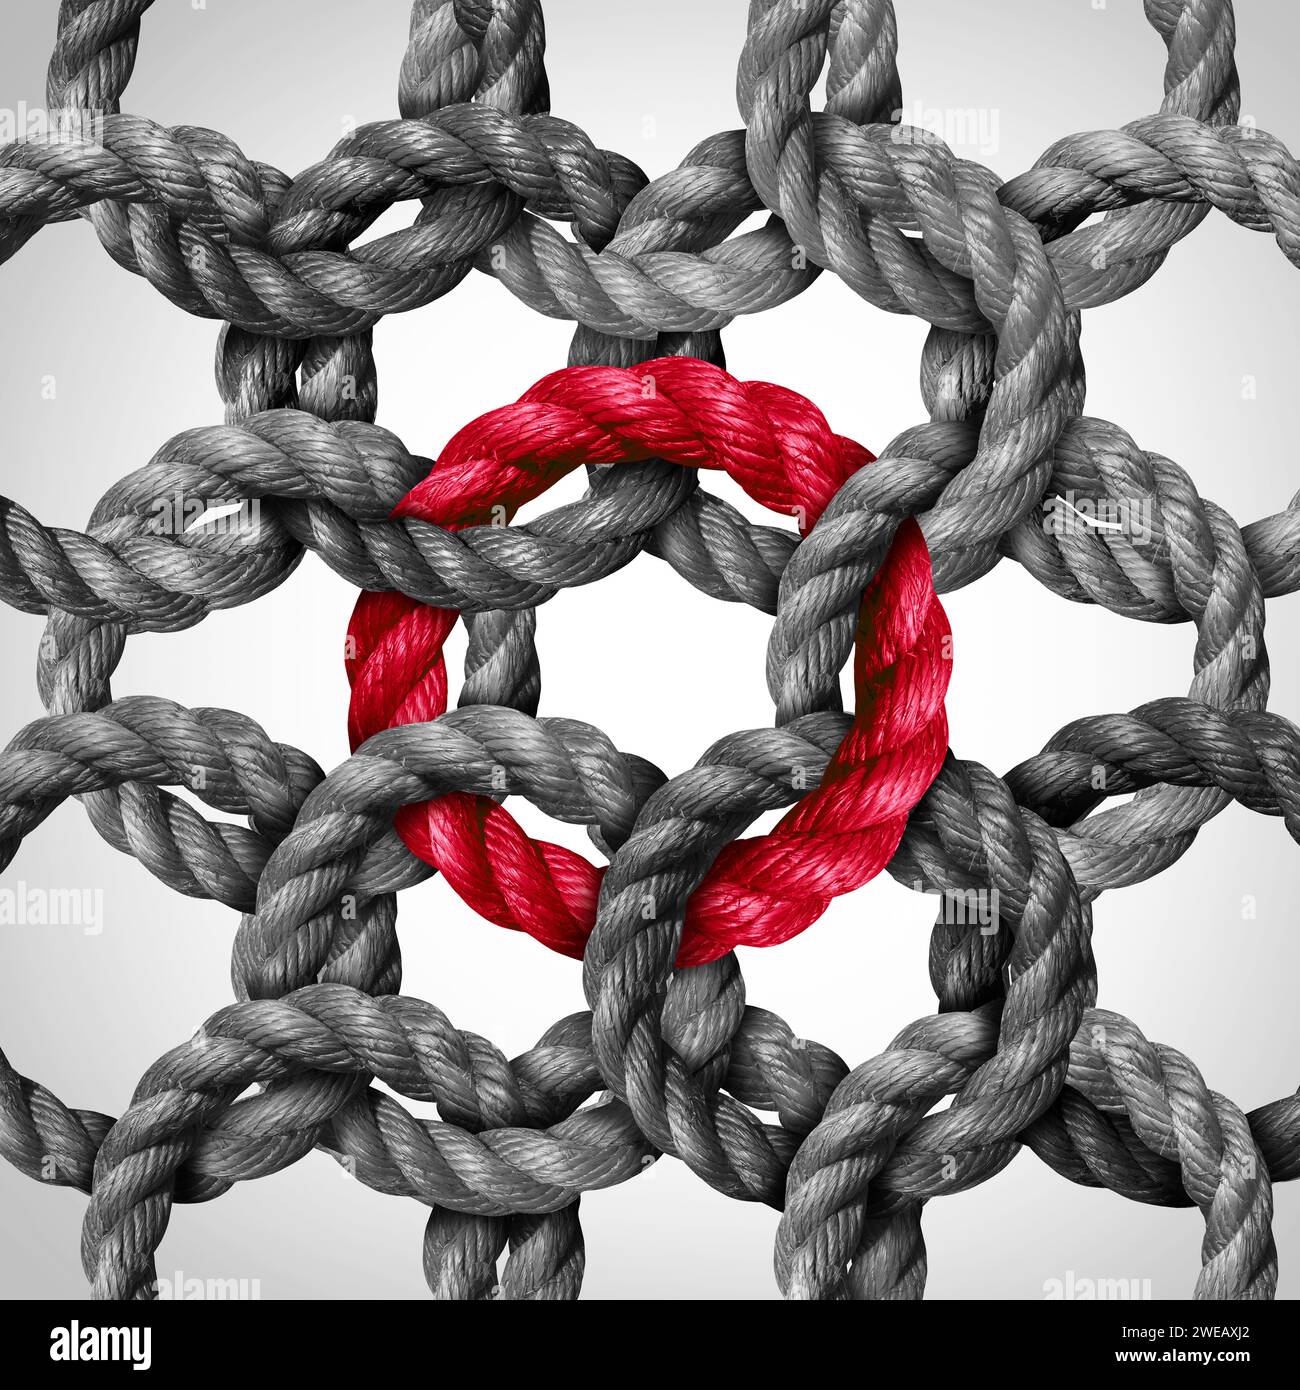 Concetto di collegamento centrale e connessione di rete o di rete chiave come metafora aziendale con un gruppo di corde circolari collegate a un anello di corda rosso come un Foto Stock